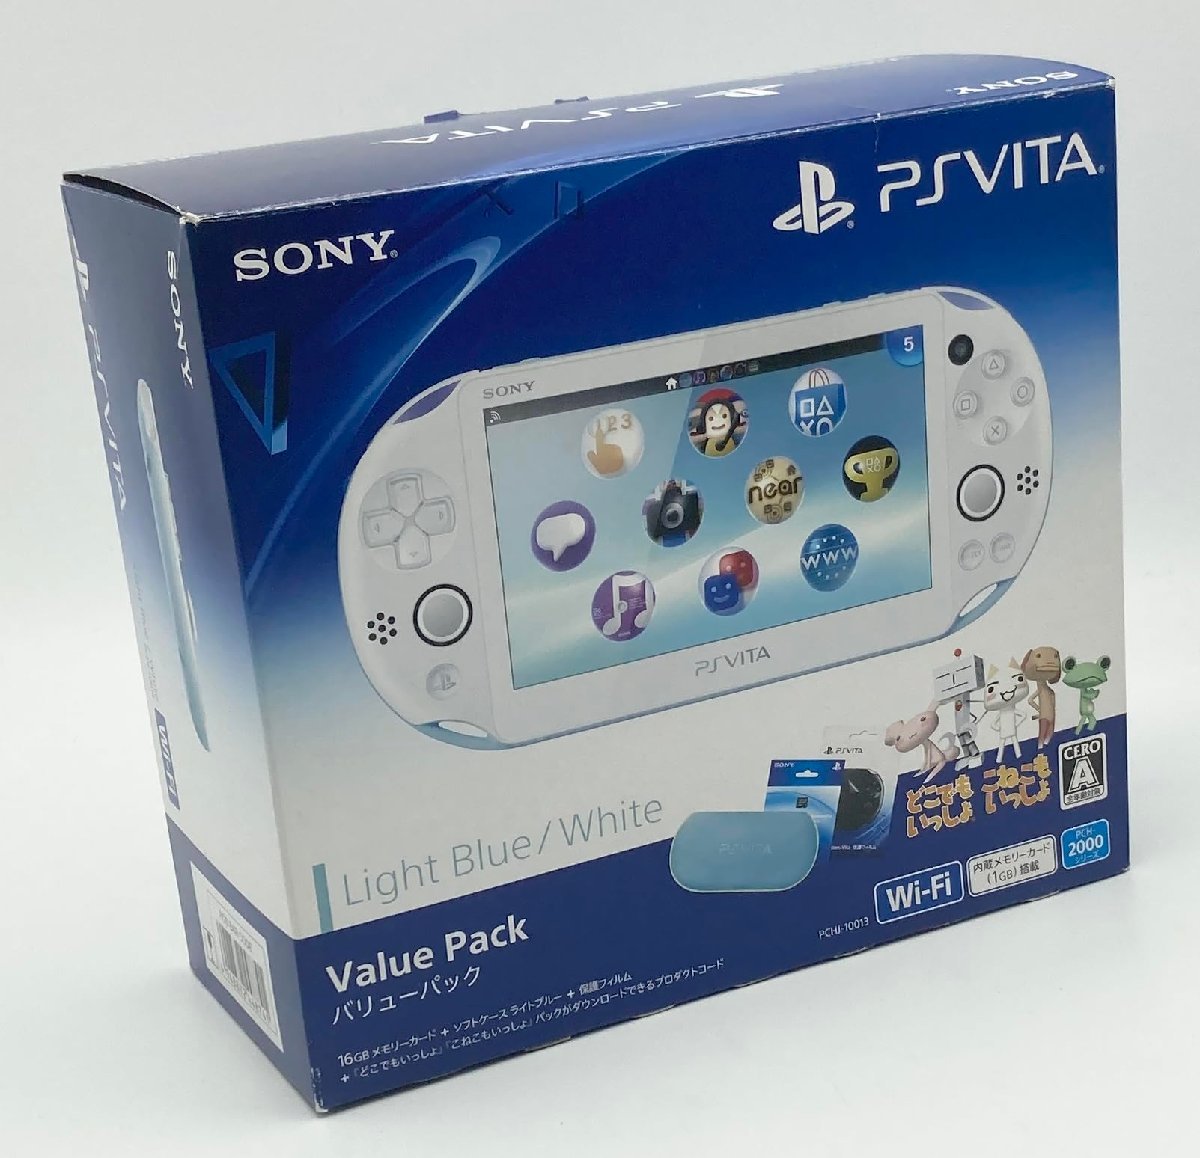 お待たせ! PlayStation ライトブルー/ホワイト Pack Value Vita PS Vita本体